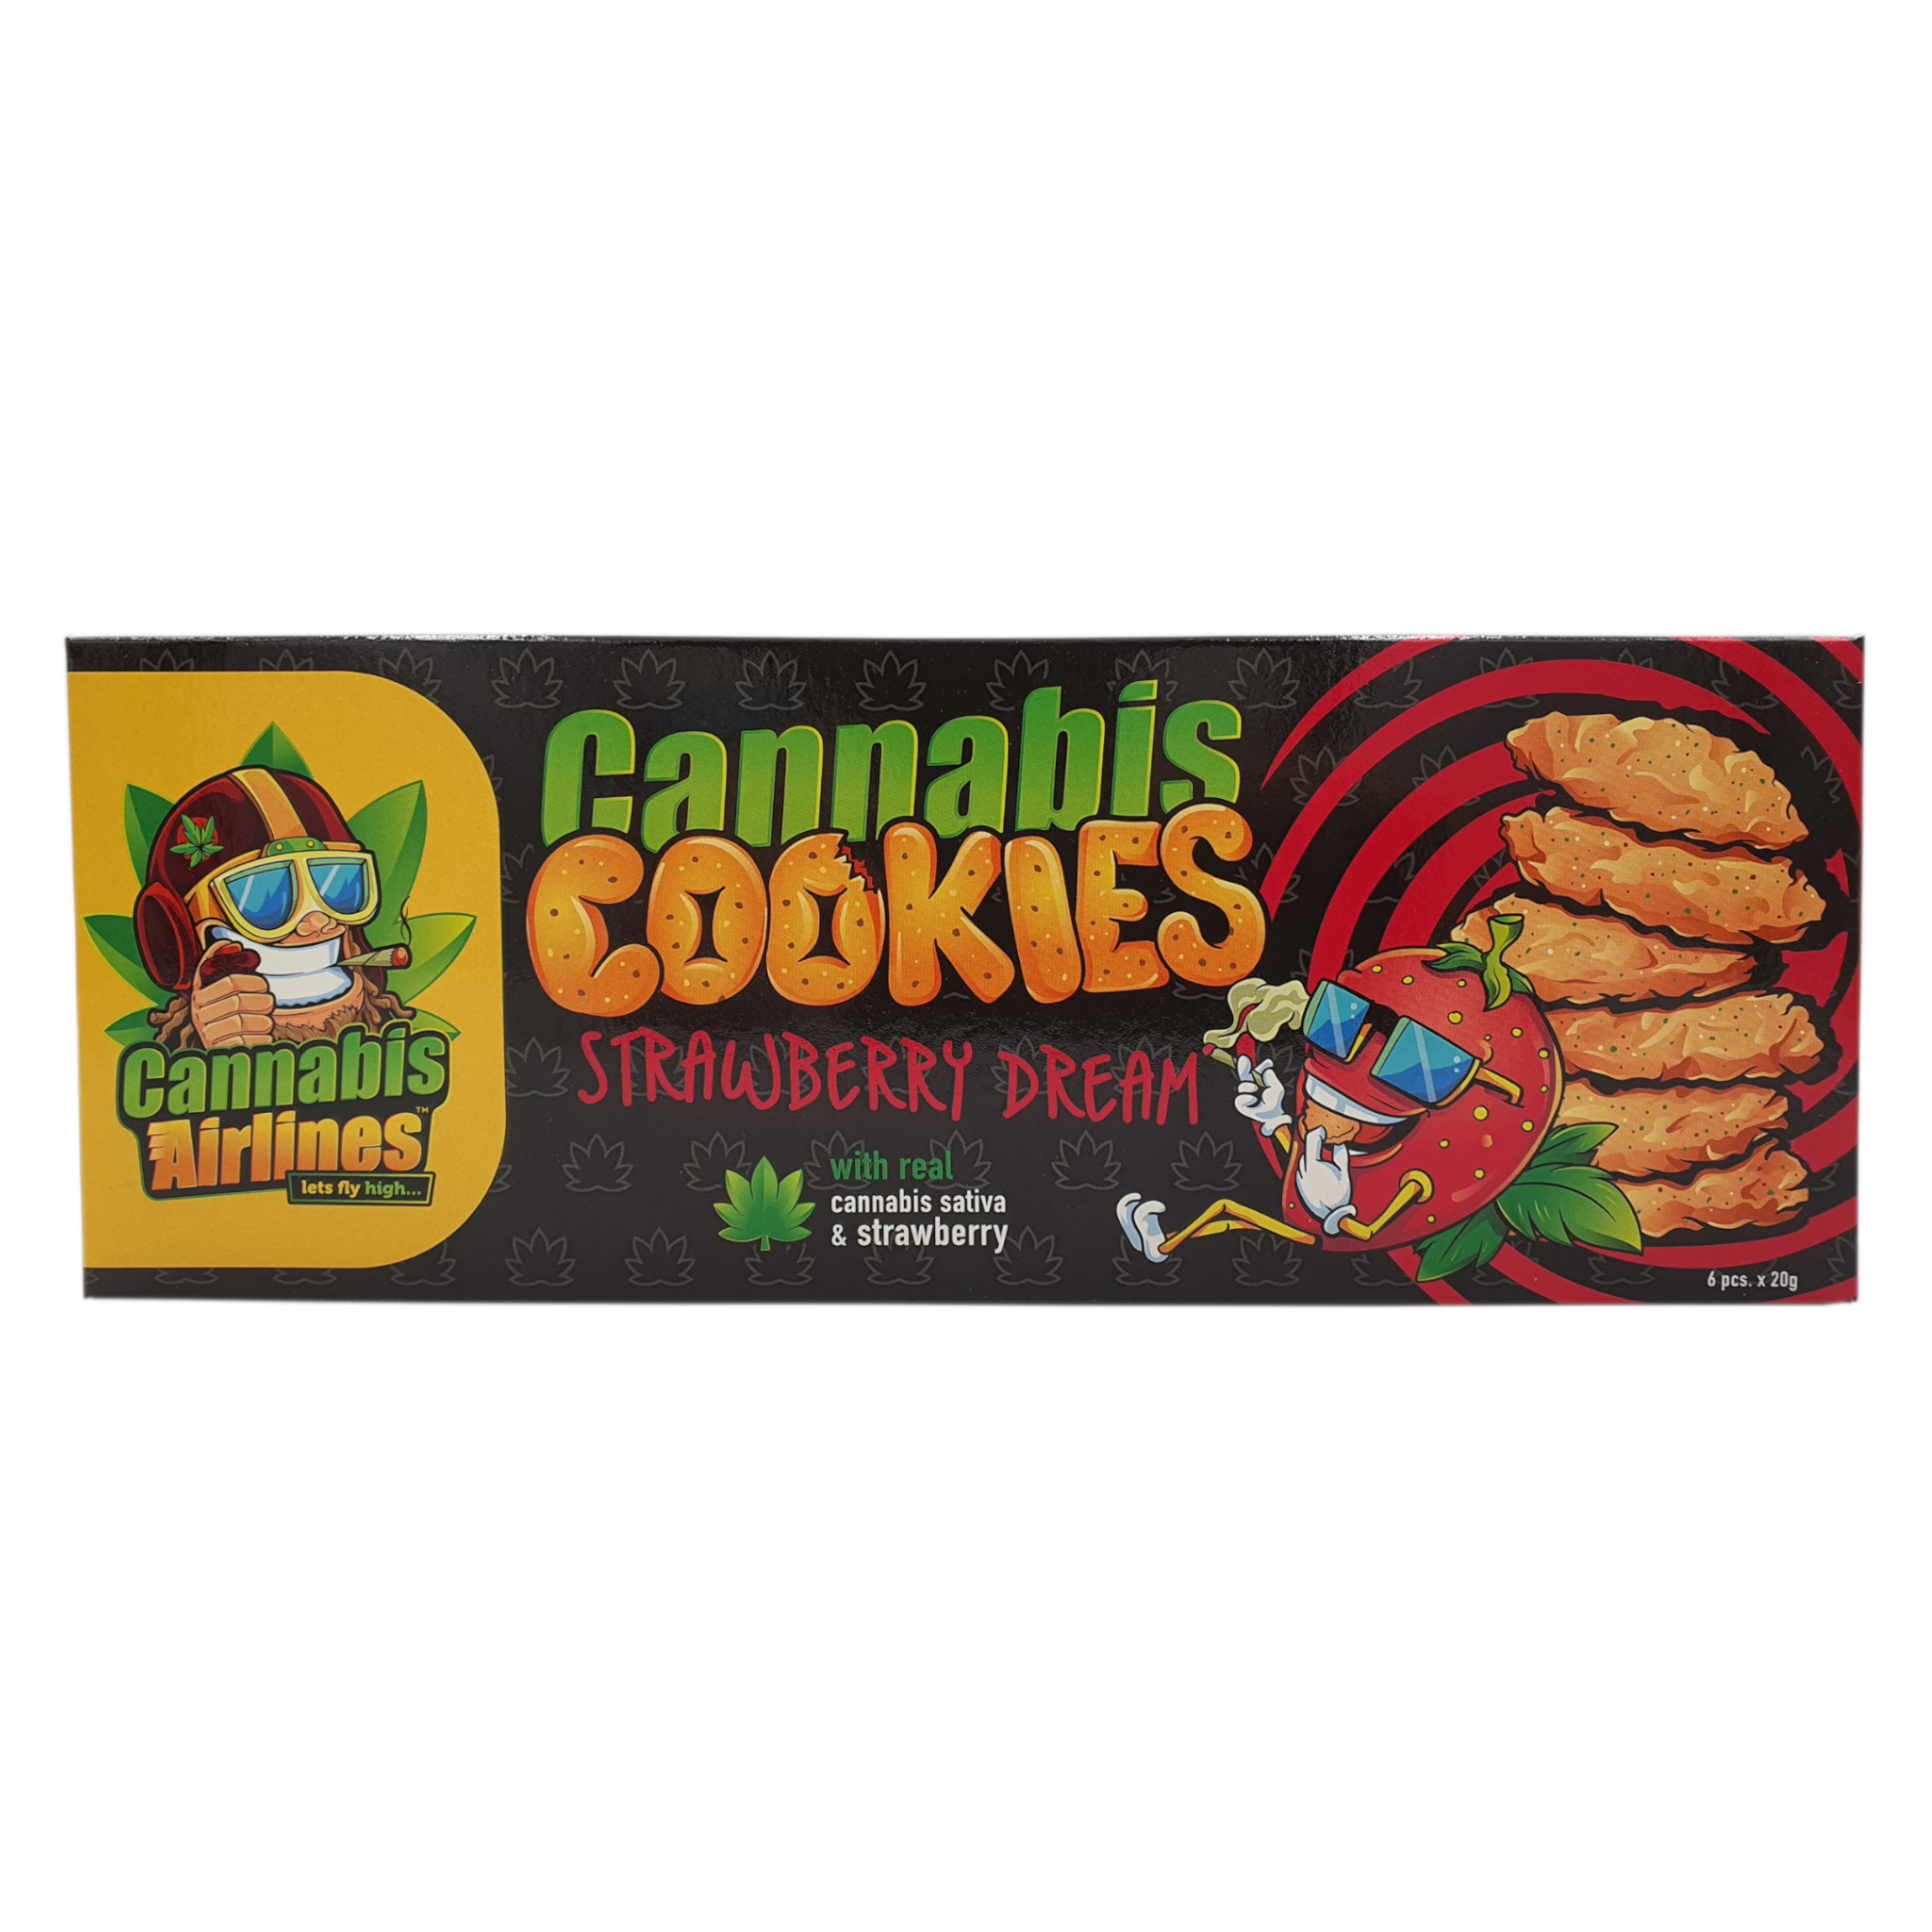 ciasteczka_cannaline_cannabis_cookies_strawberry_dream_cannabis_airlines_opakowanie